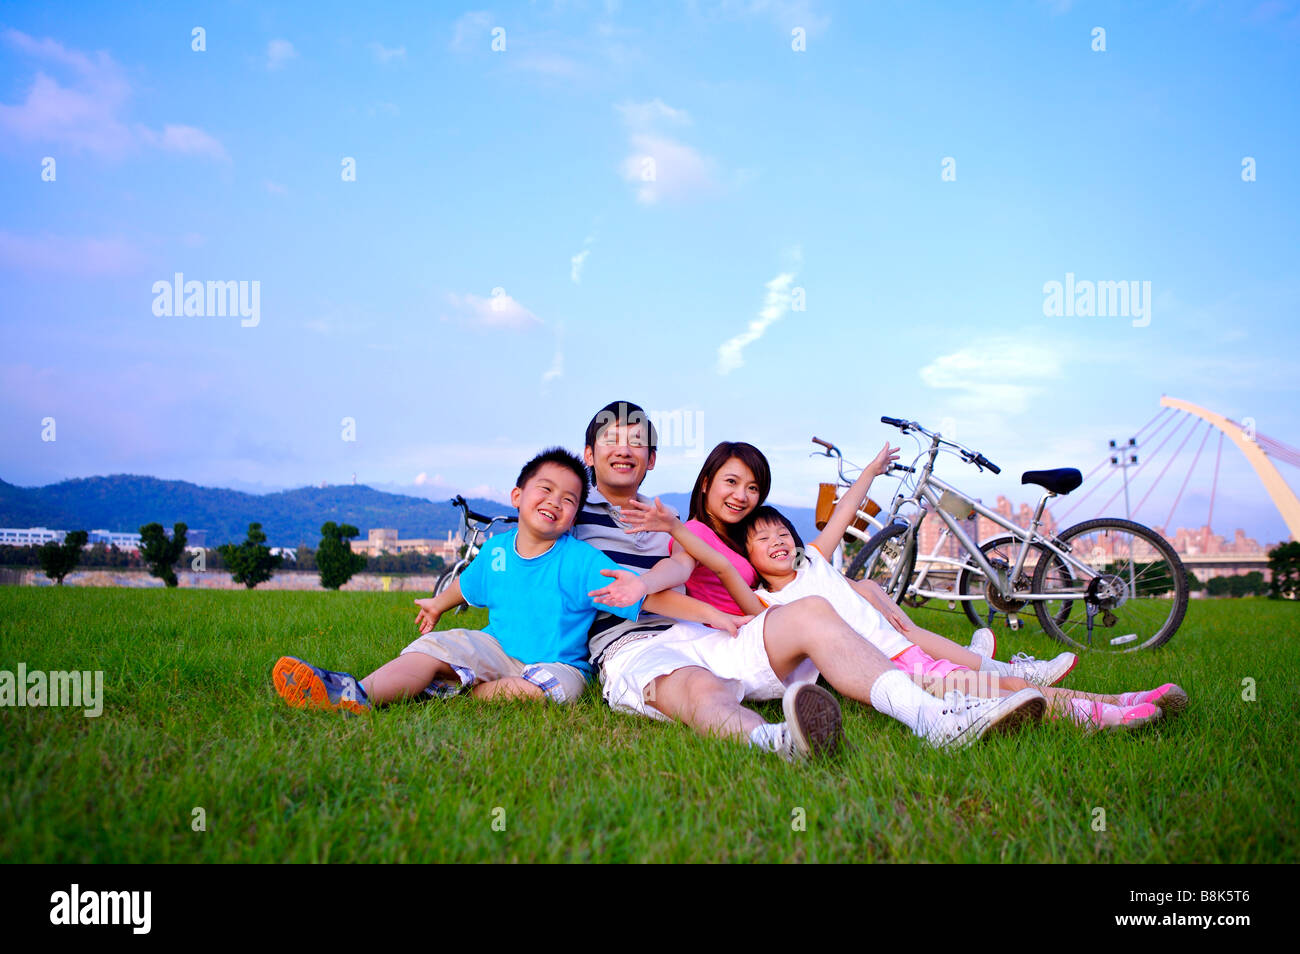 Junge Familie mit zwei Kindern zusammensitzen auf dem Rasen und glücklich lächelnd Stockfoto